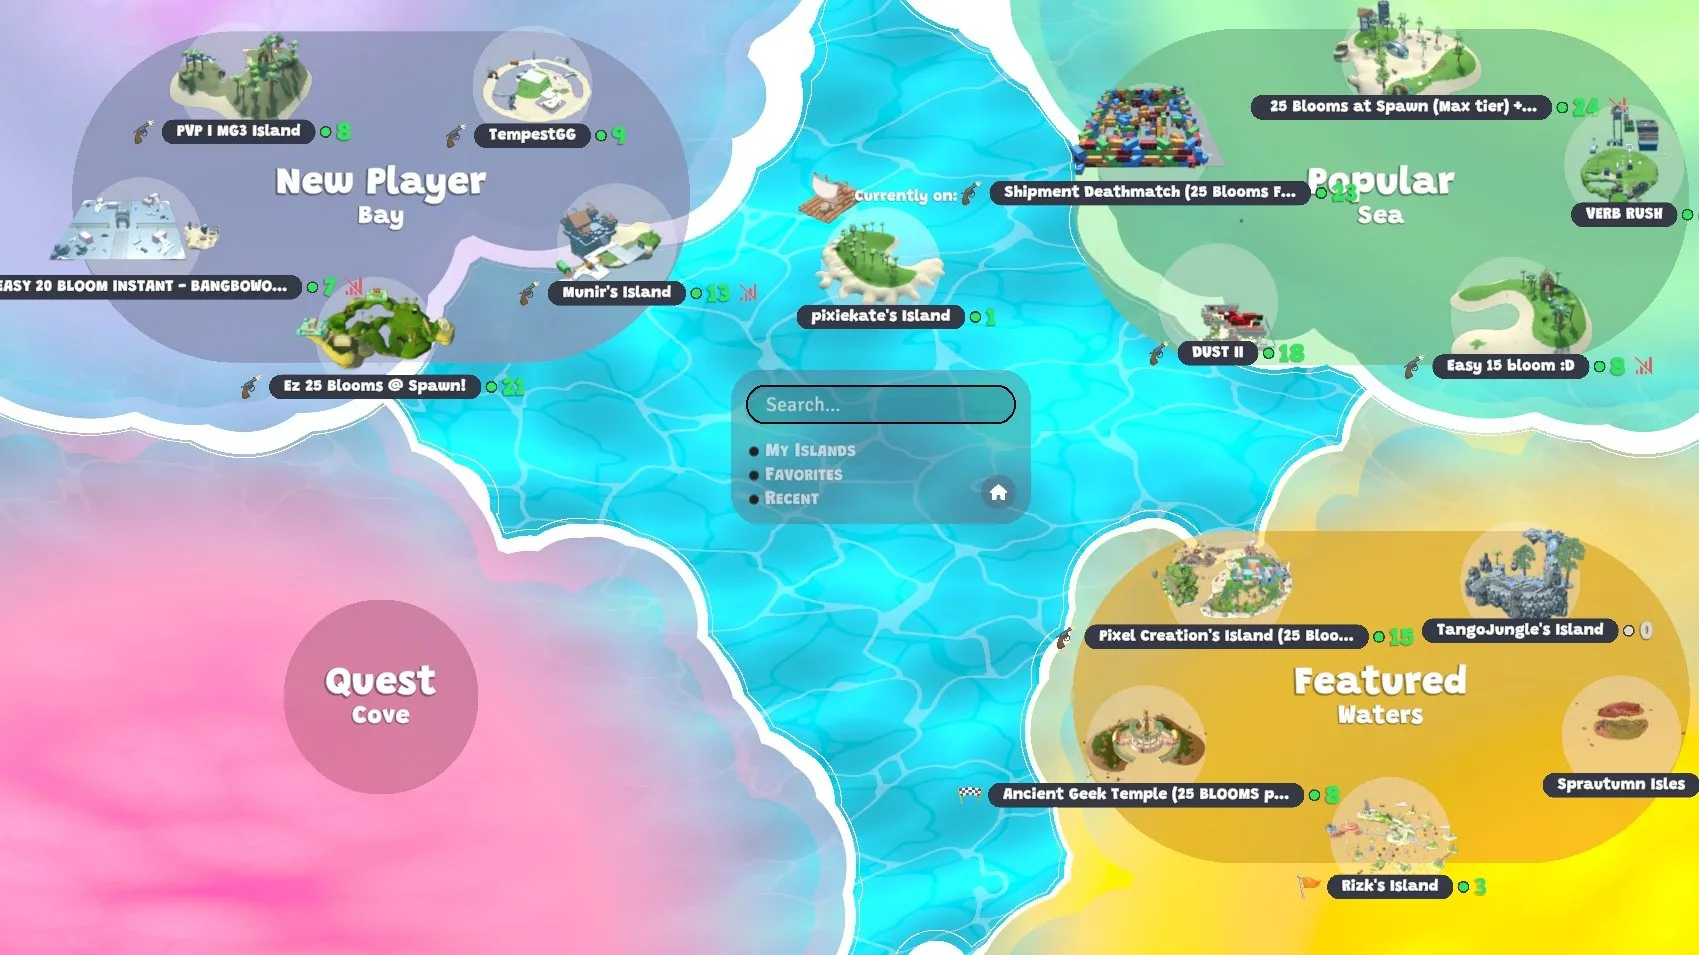 गेम स्क्रीनशॉट में लोकप्रिय द्वीपों, "विशेष रुप से प्रदर्शित" द्वीप और नए खिलाड़ियों के लिए तैयार द्वीपों के साथ एक मानचित्र दिखाया गया है।